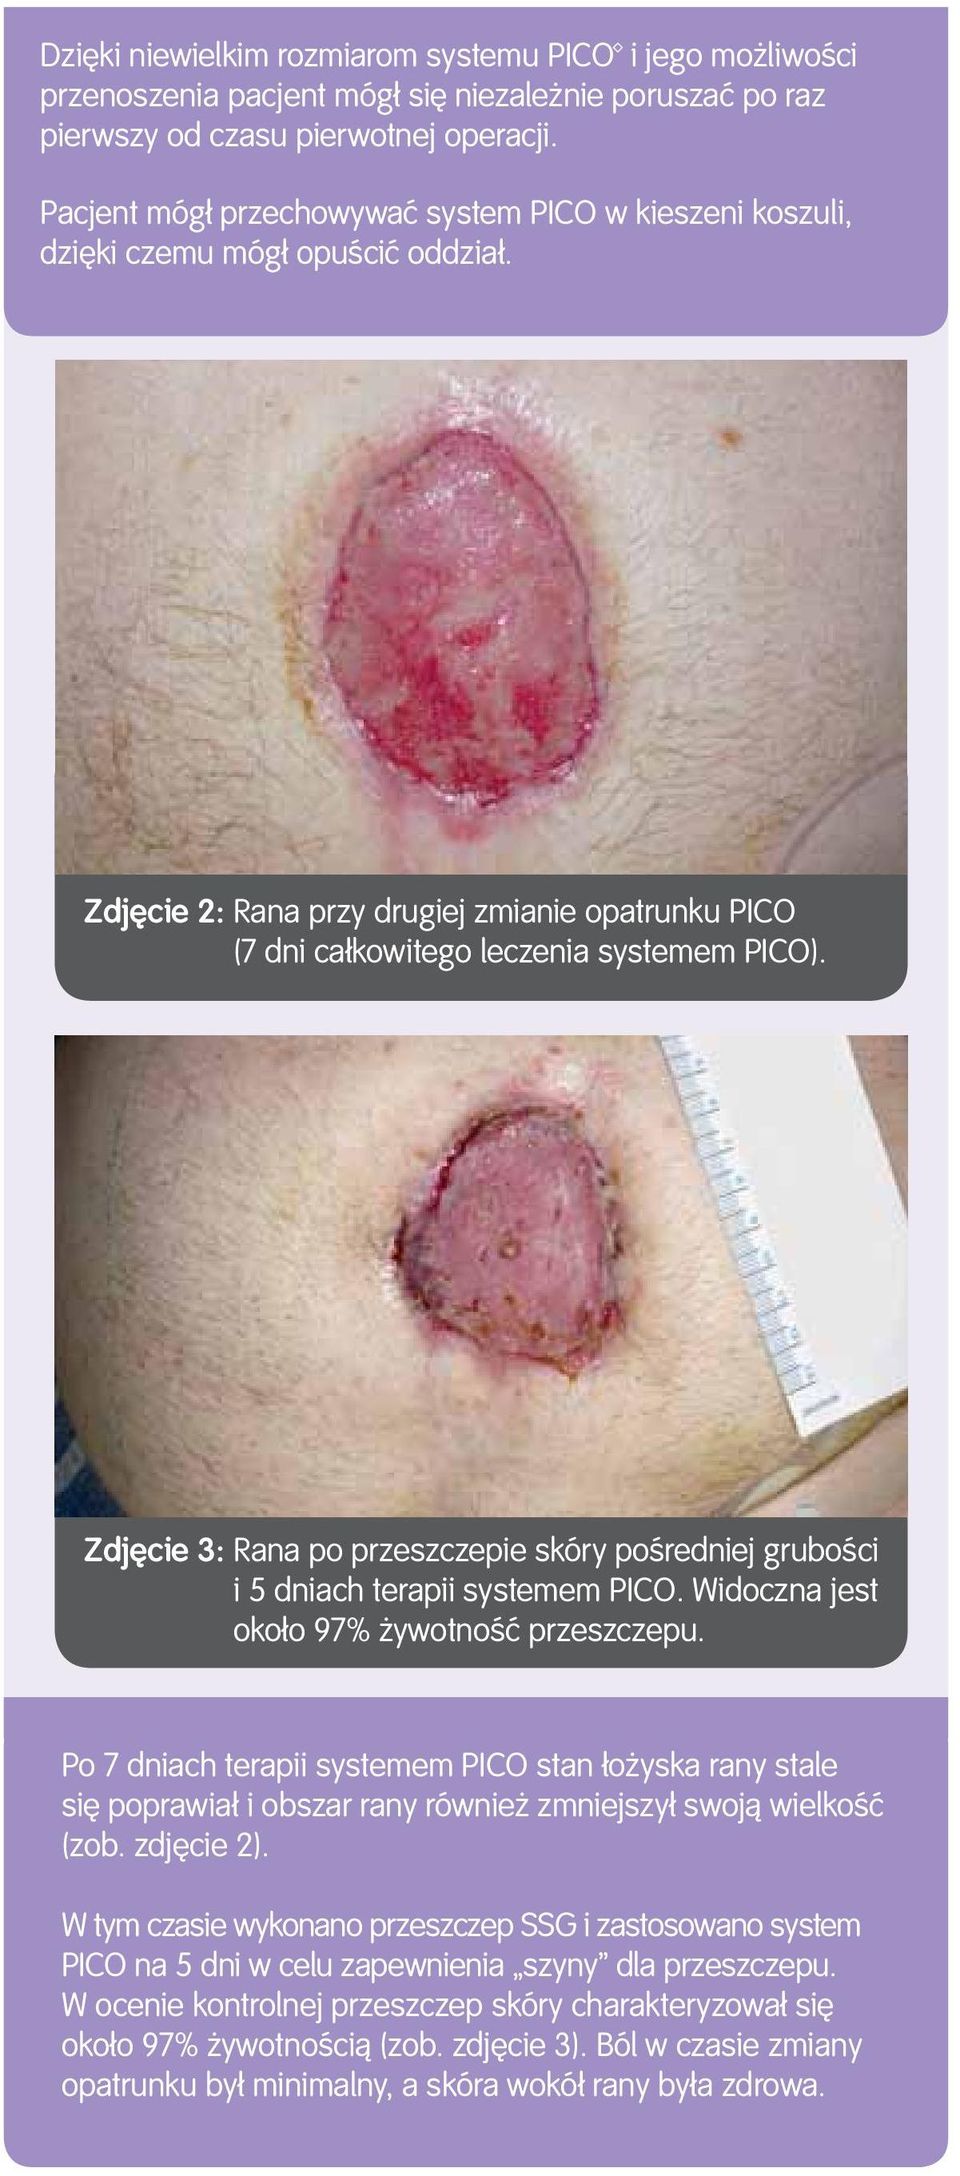 Zdjęcie 3: Rana po przeszczepie skóry pośredniej grubości i 5 dniach terapii systemem PICO. Widoczna jest około 97% żywotność przeszczepu.